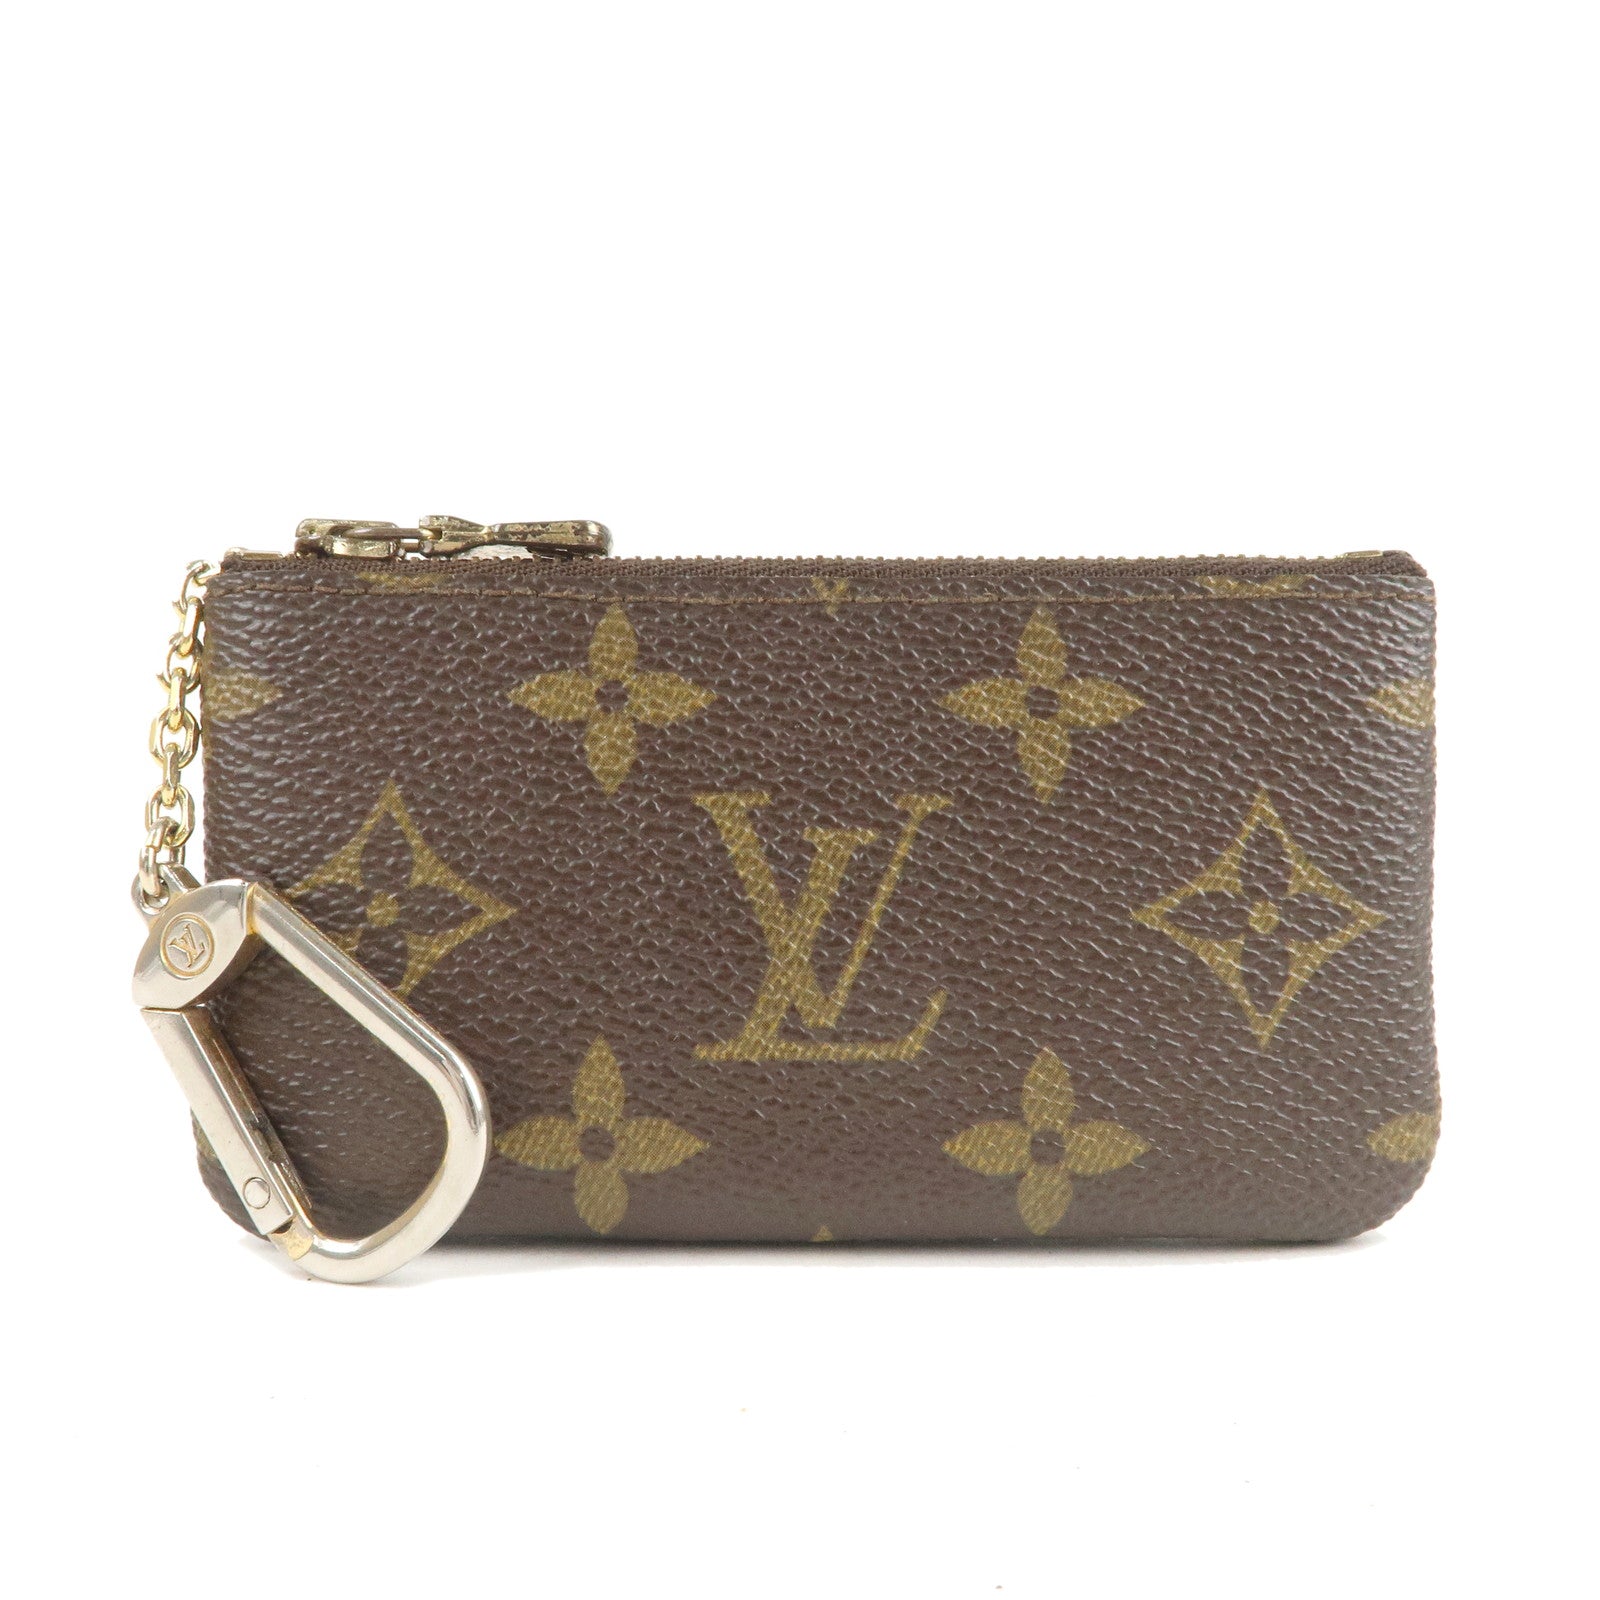 Buy Louis Vuitton Monogram Canvas Key Pouch M62650 at